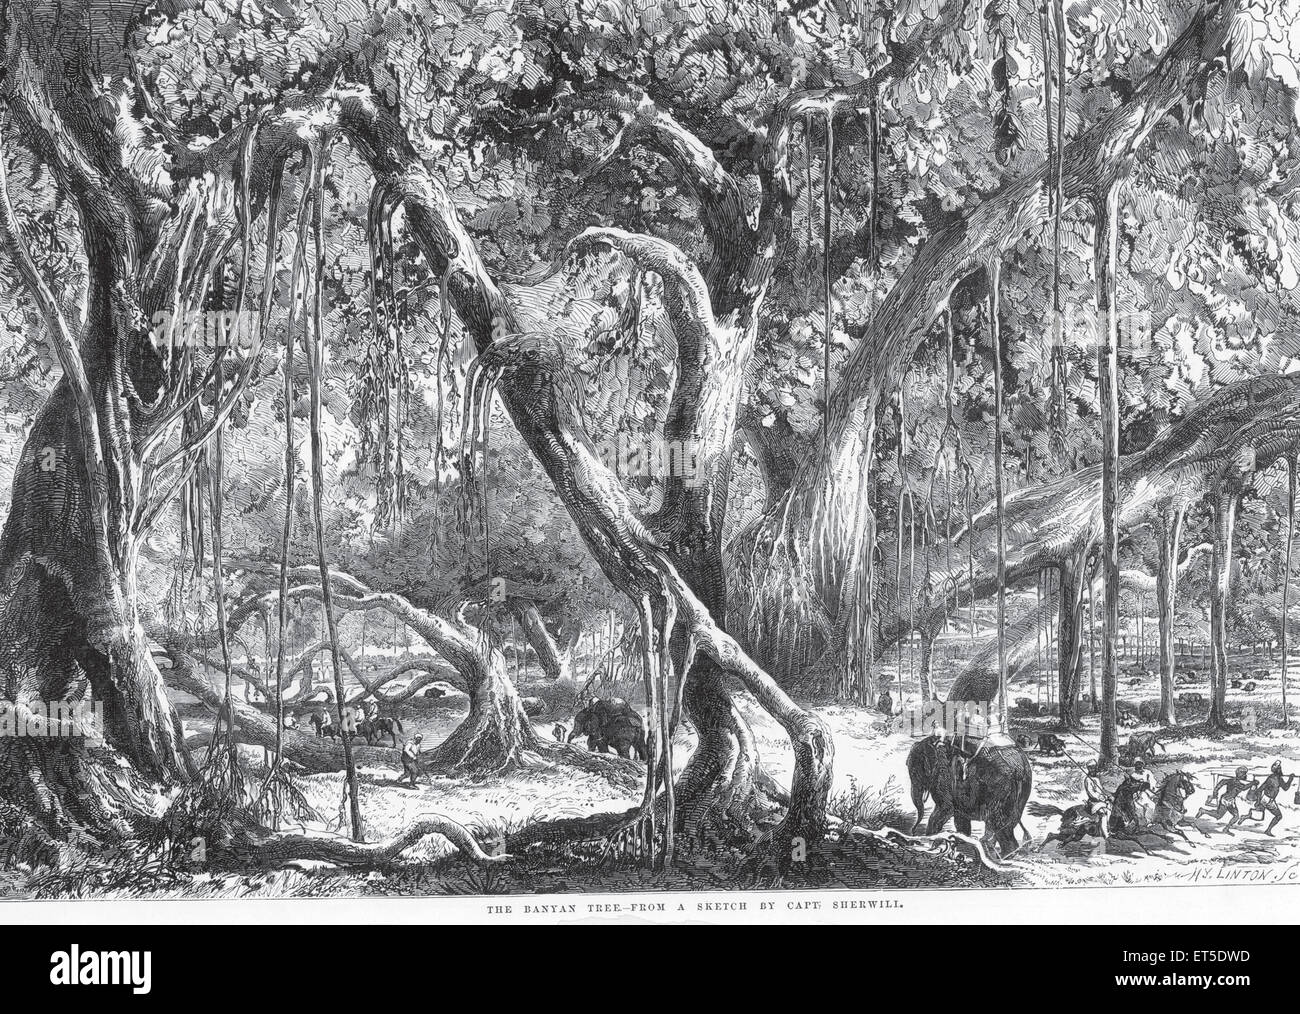 Elefanti e cavalli che attraversano la foresta di alberi di banyan, India, Asia, asiatico, indiano, vecchia incisione d'epoca del 1800 Foto Stock